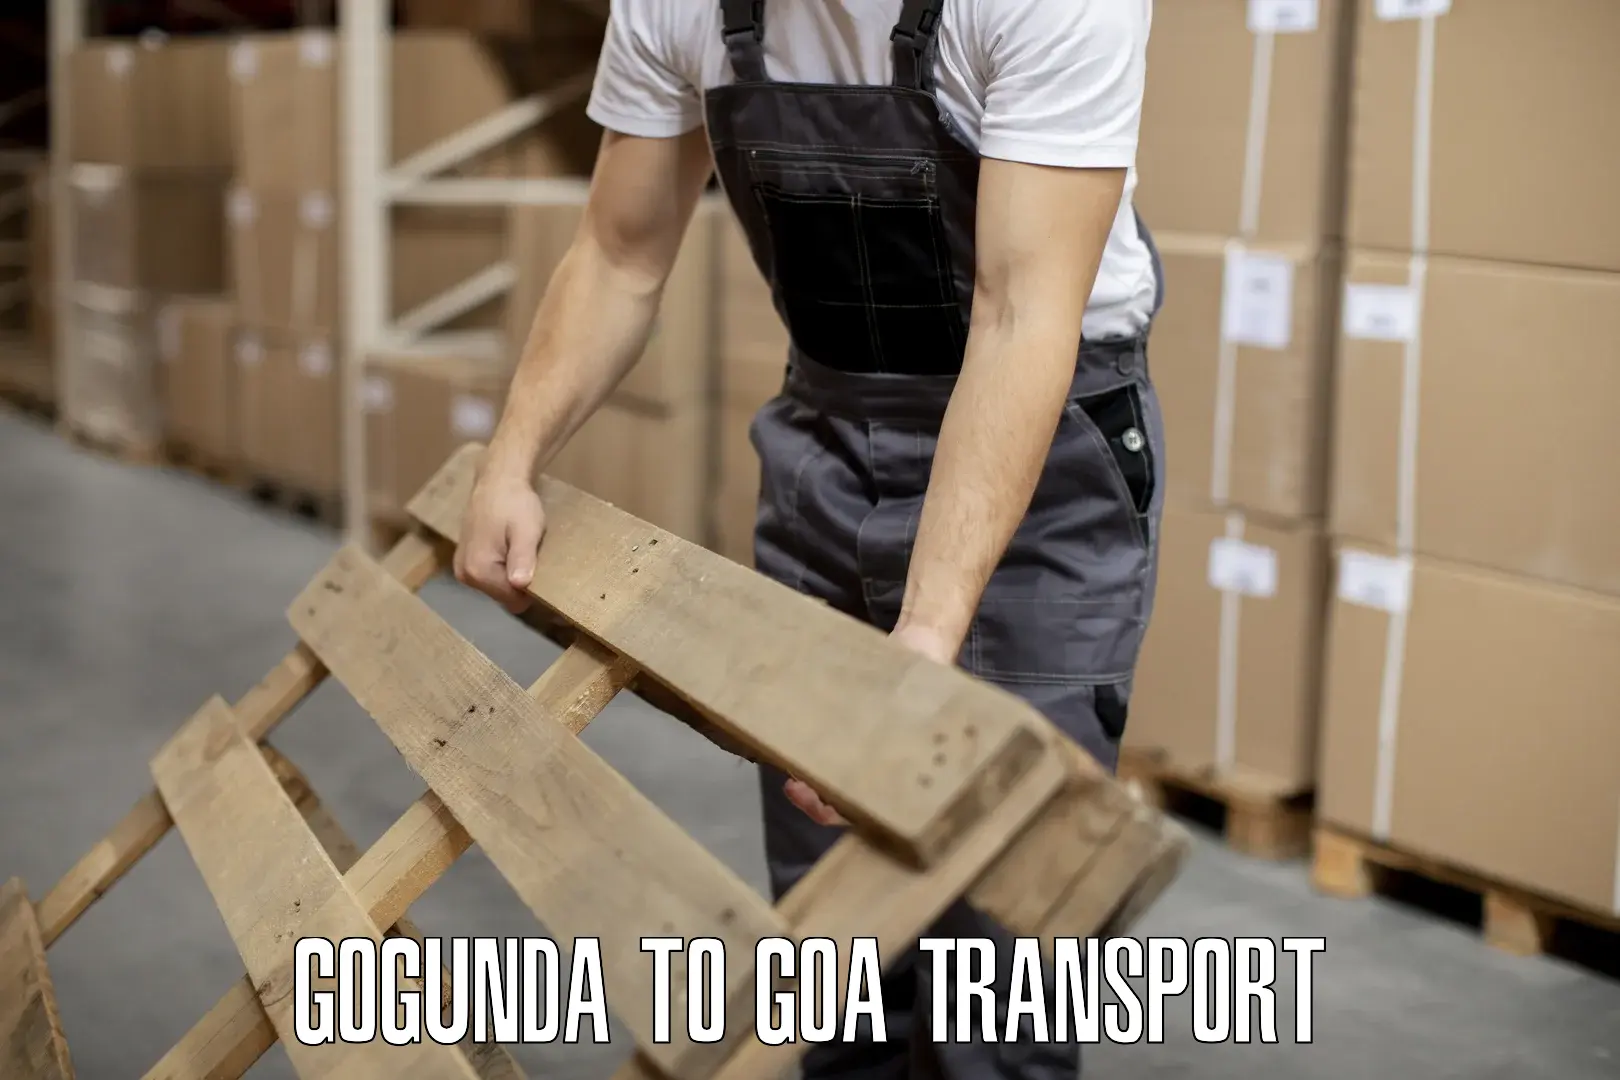 Daily parcel service transport Gogunda to Canacona